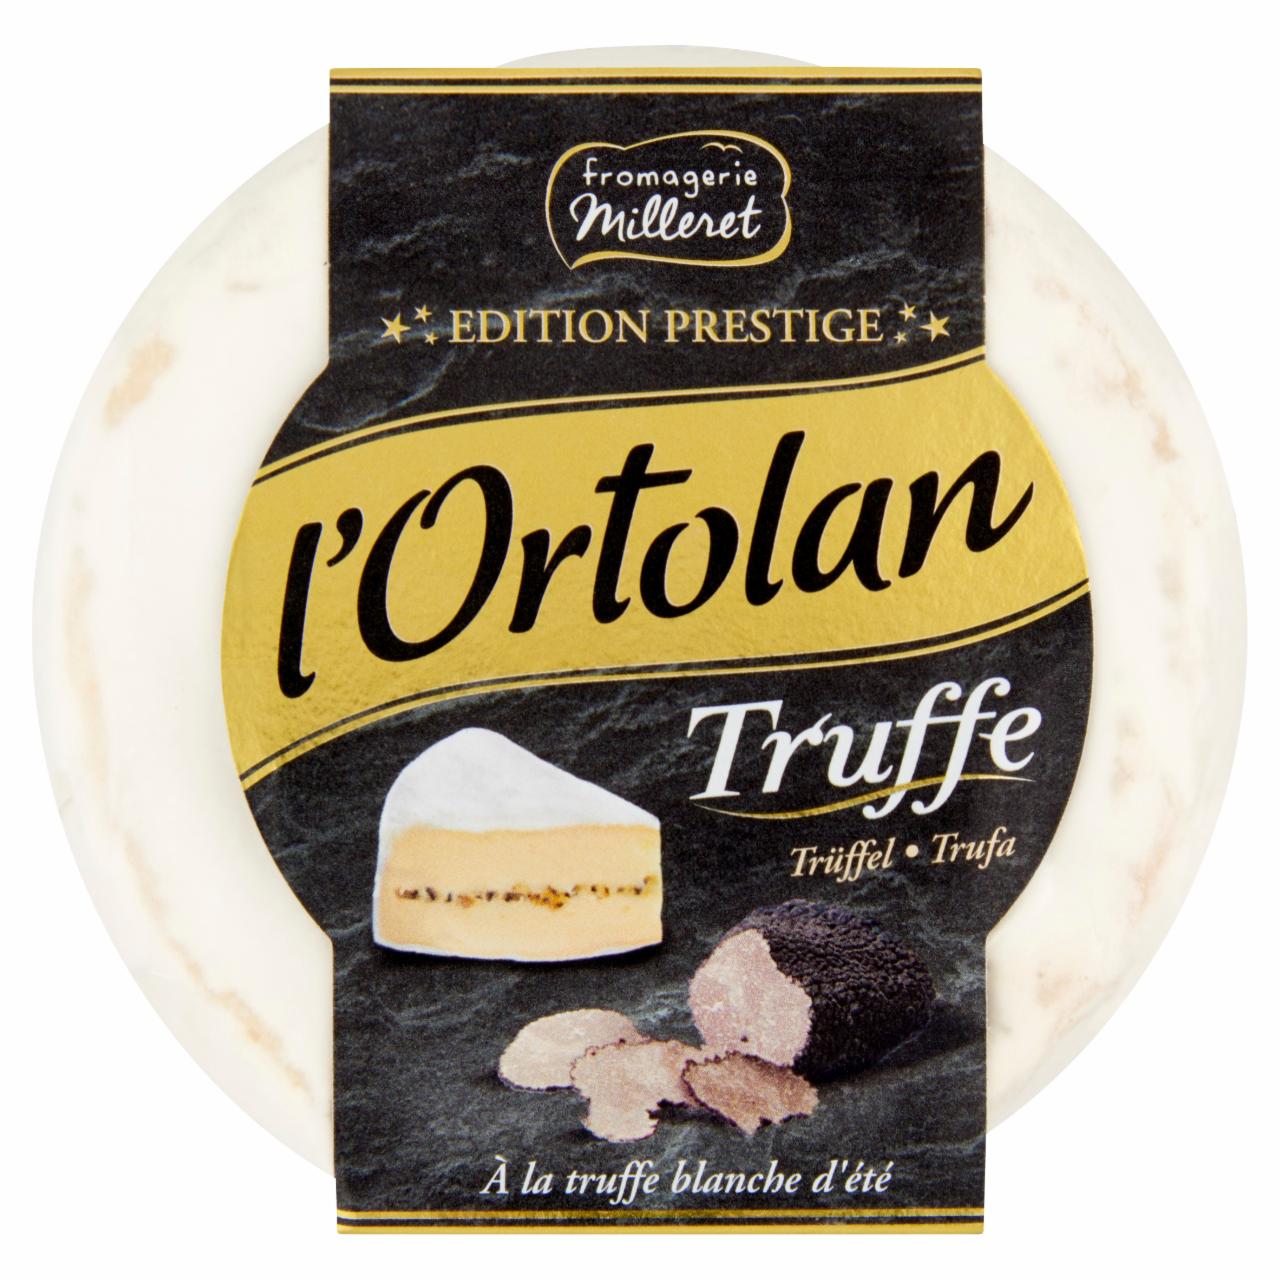 Képek - L'Ortolan zsíros, fehér nemespenésszel érő lágy sajt, szarvasgombával töltve 135 g